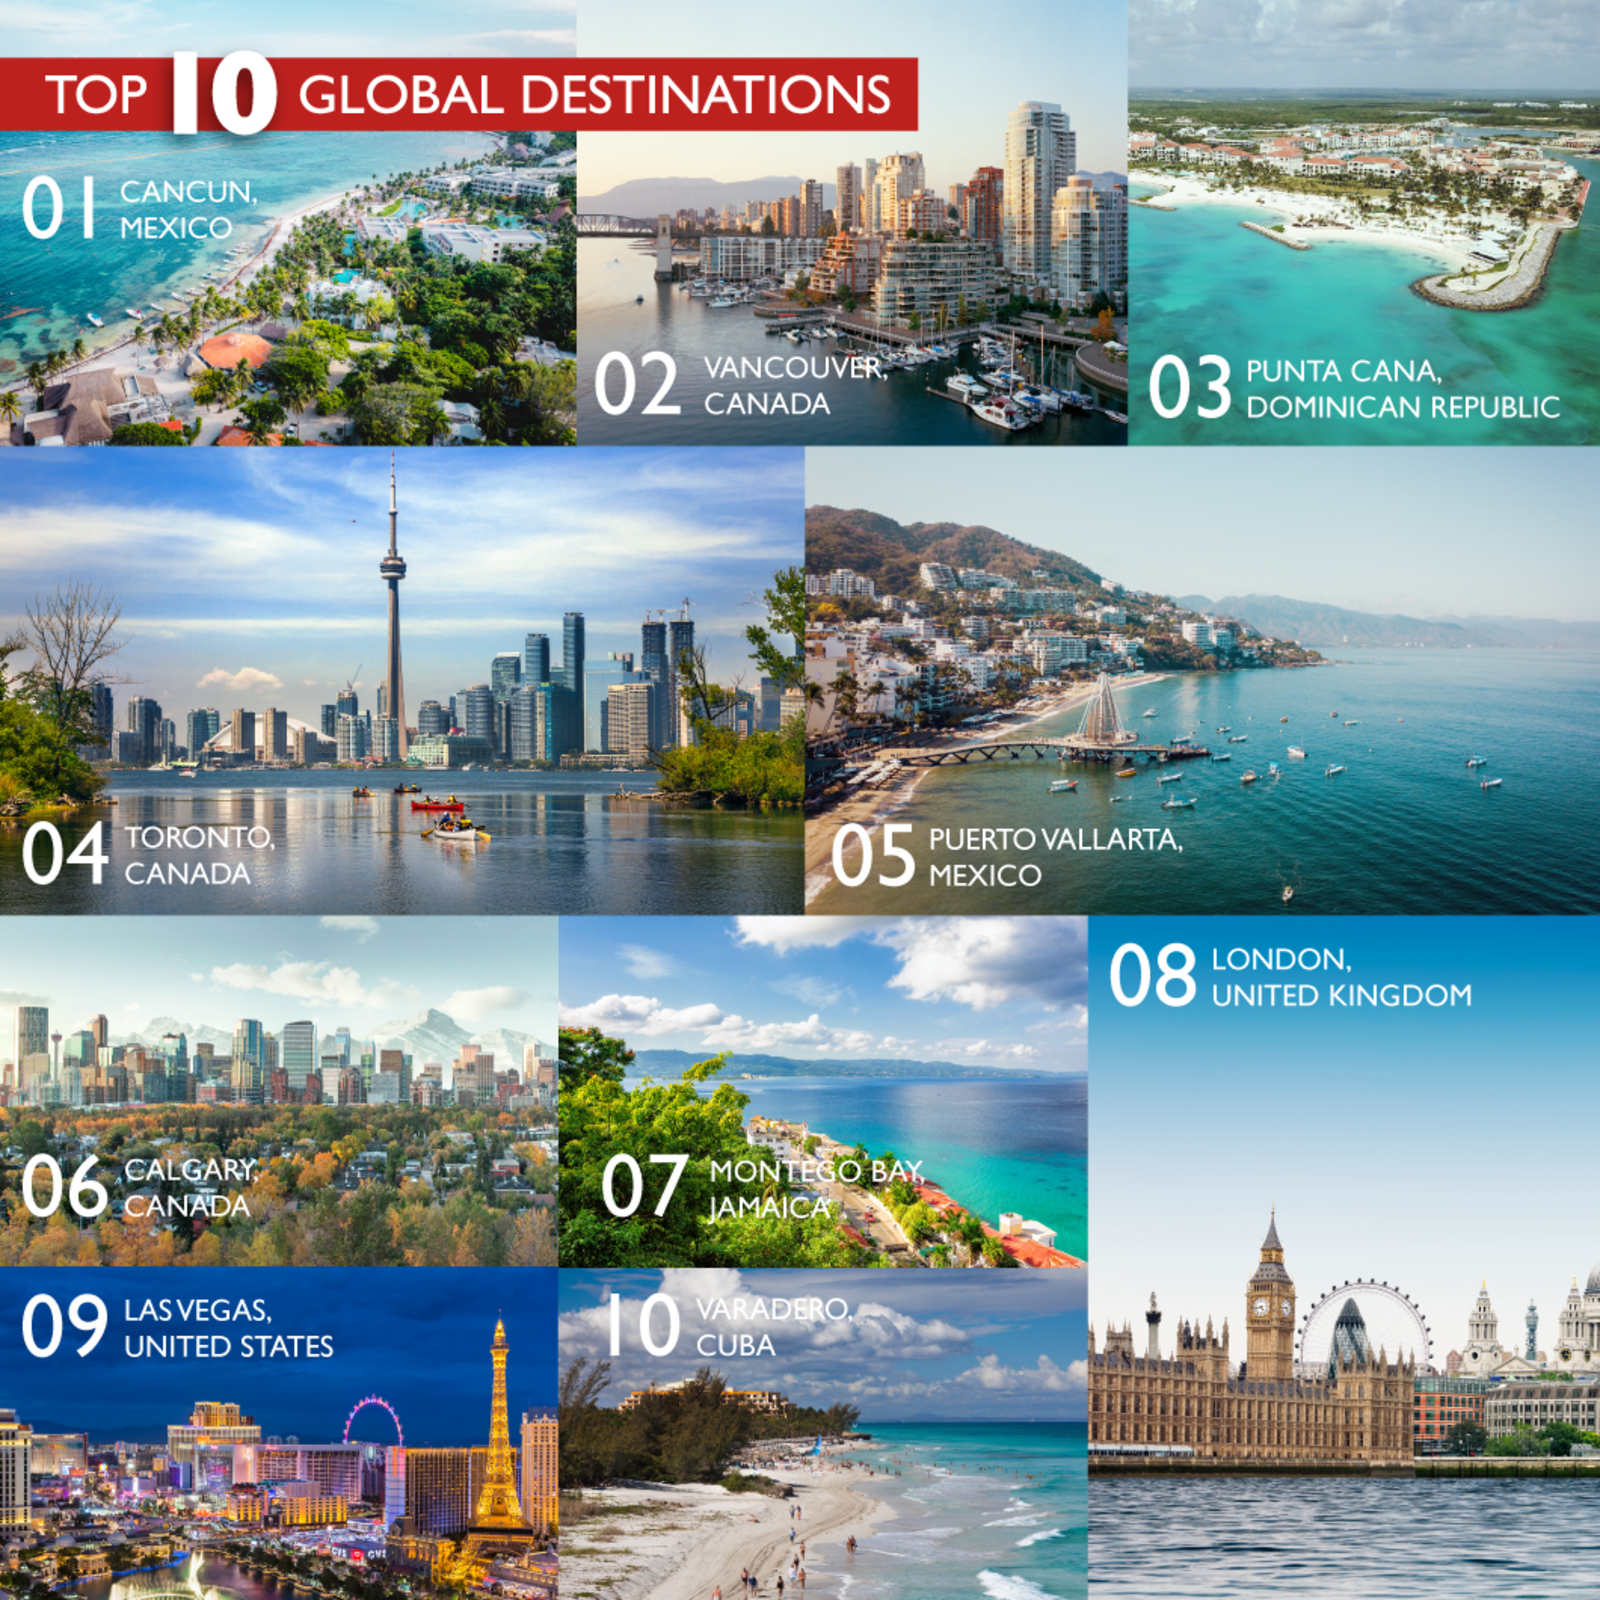 Canada - Top 10 Global Destinations